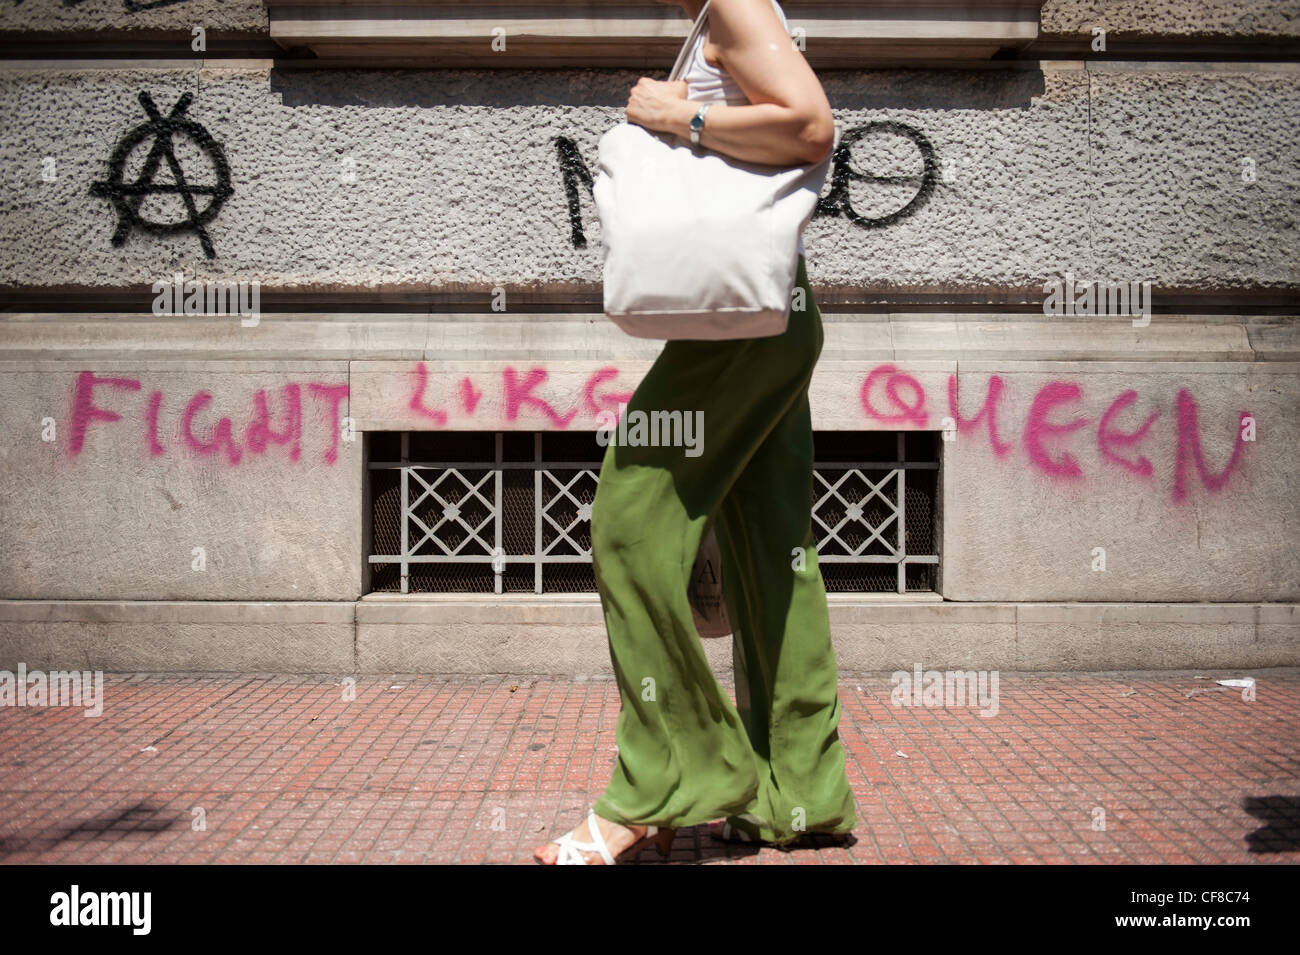 Una mujer camina en Panepistimiou Str, centro de Atenas por un graffiti "lucha como una reina' Foto de stock